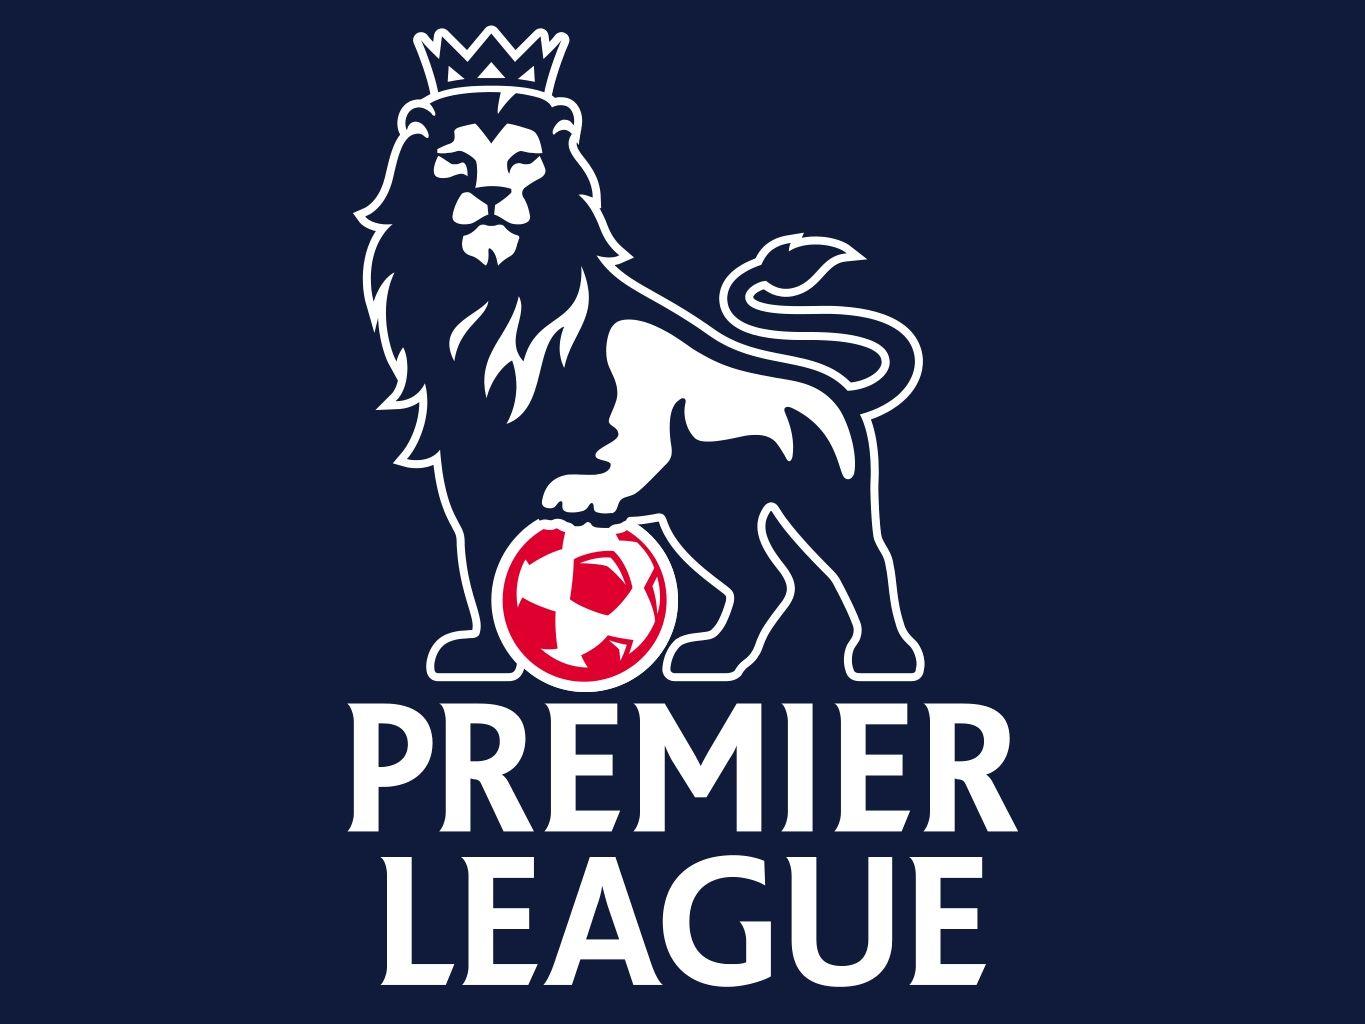 barclays premier league logo